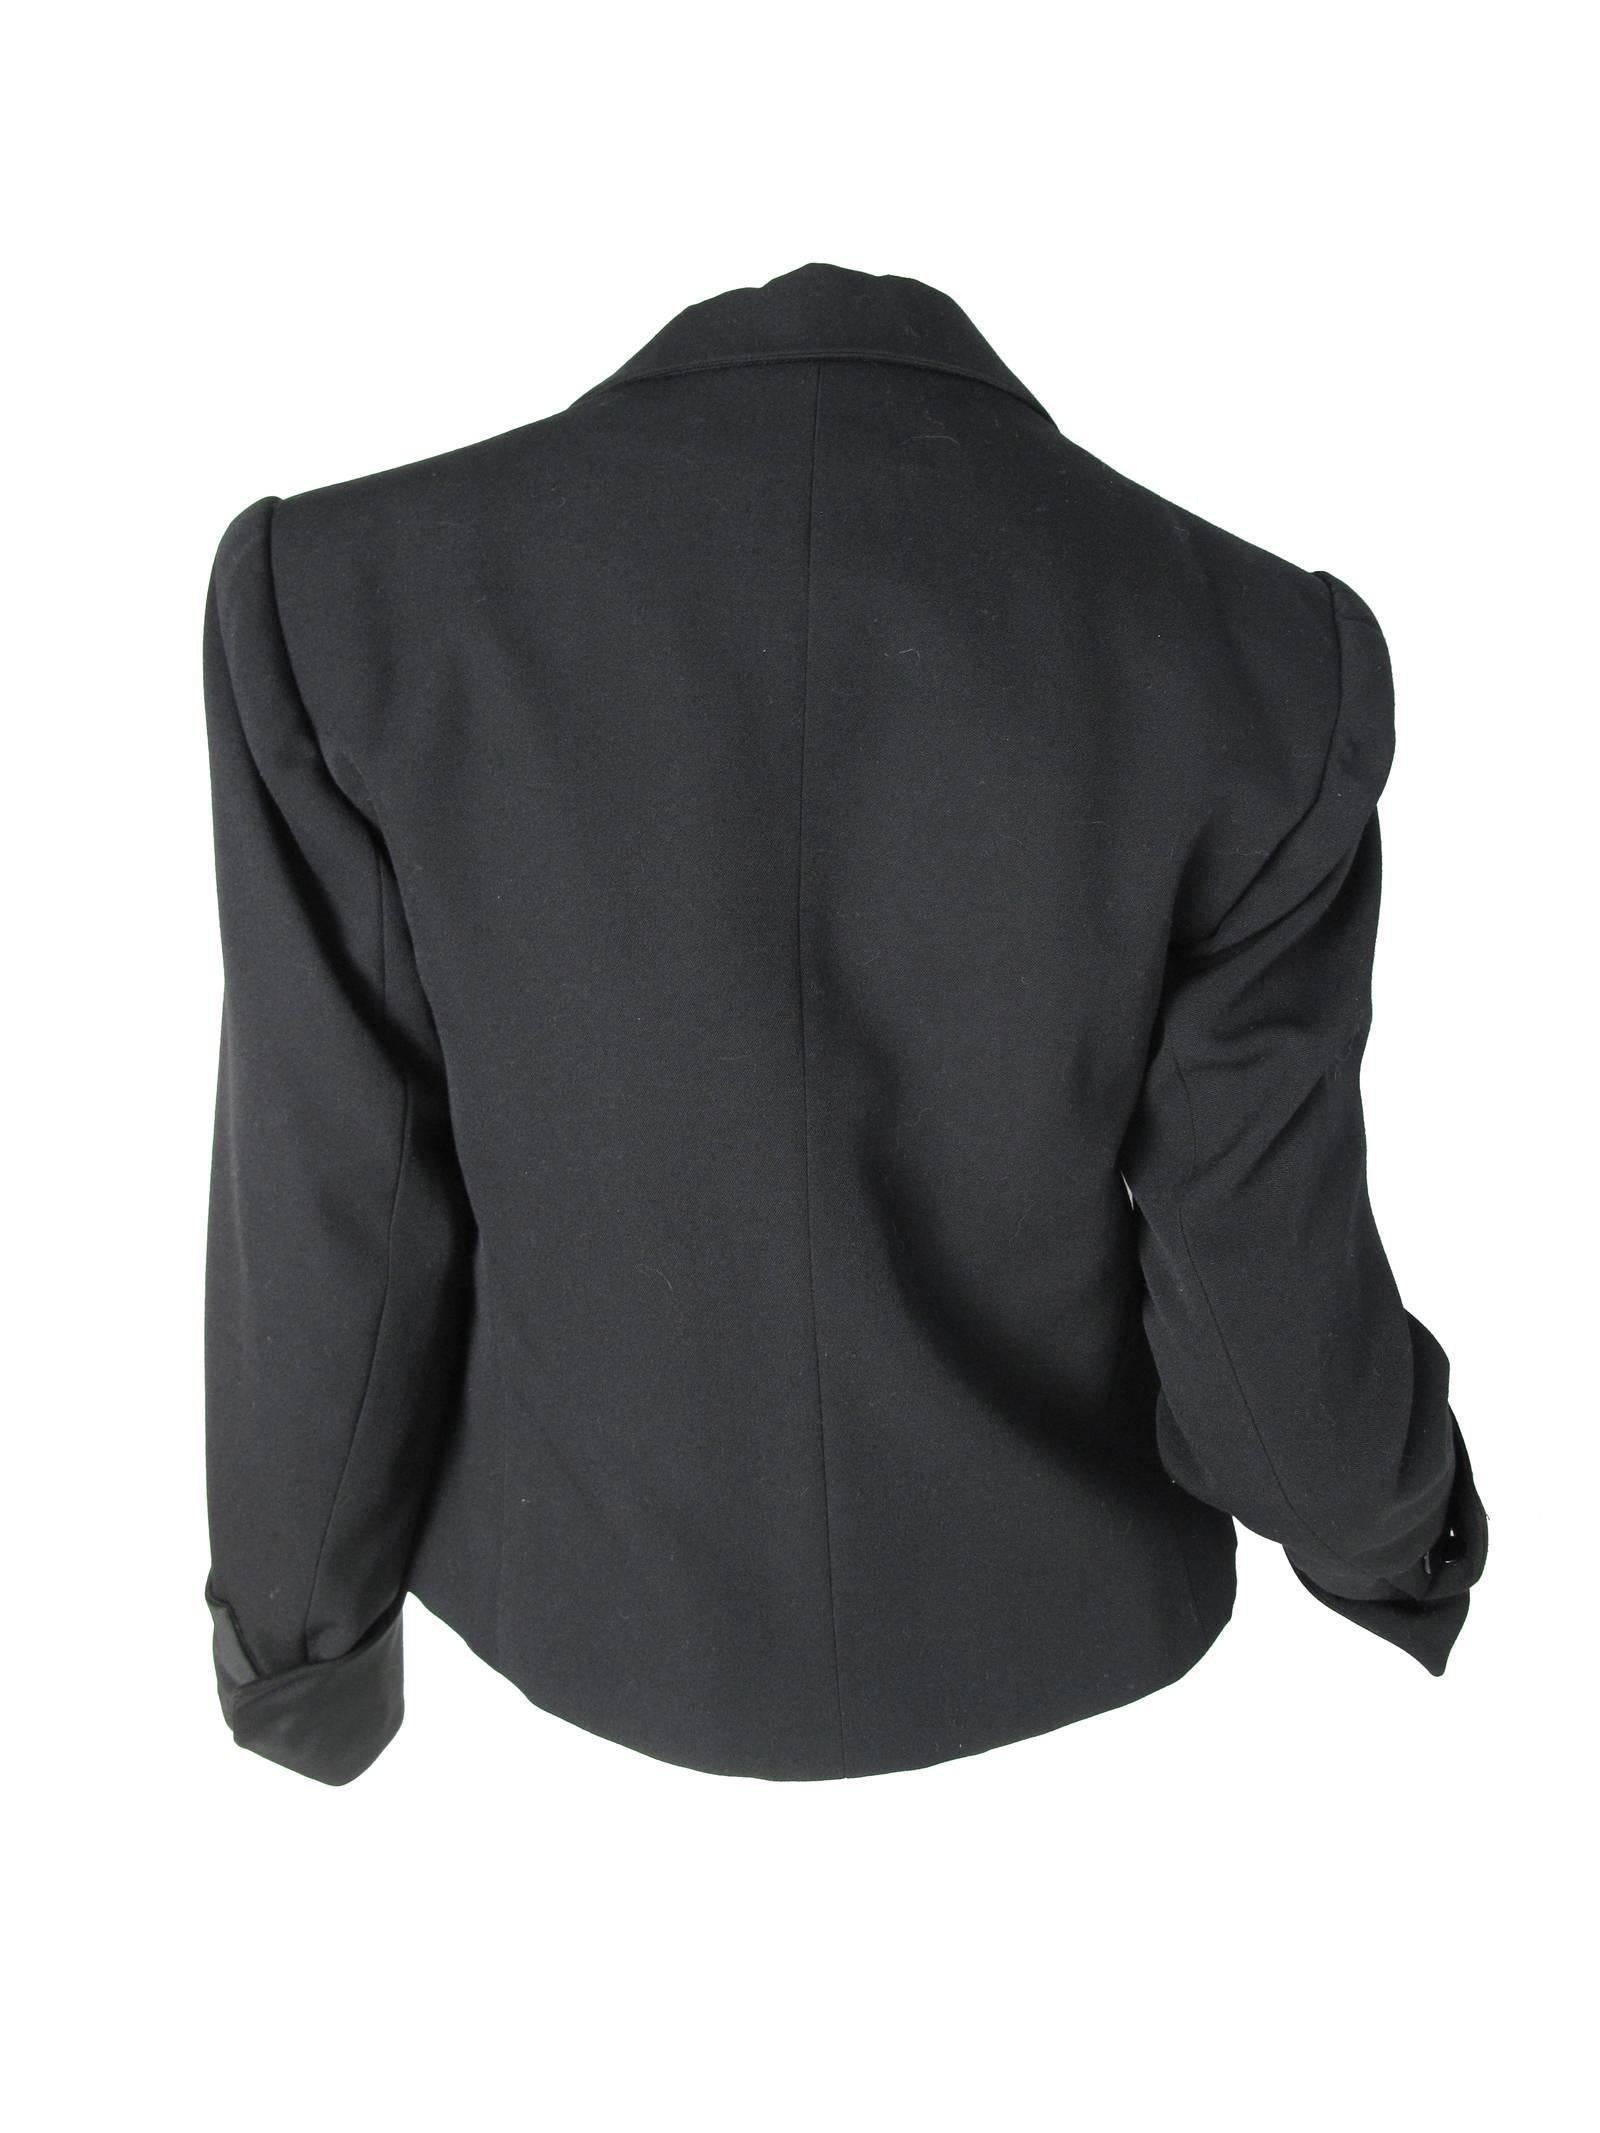 Women's 1980s Yves Saint Laurent Tuxedo Jacket